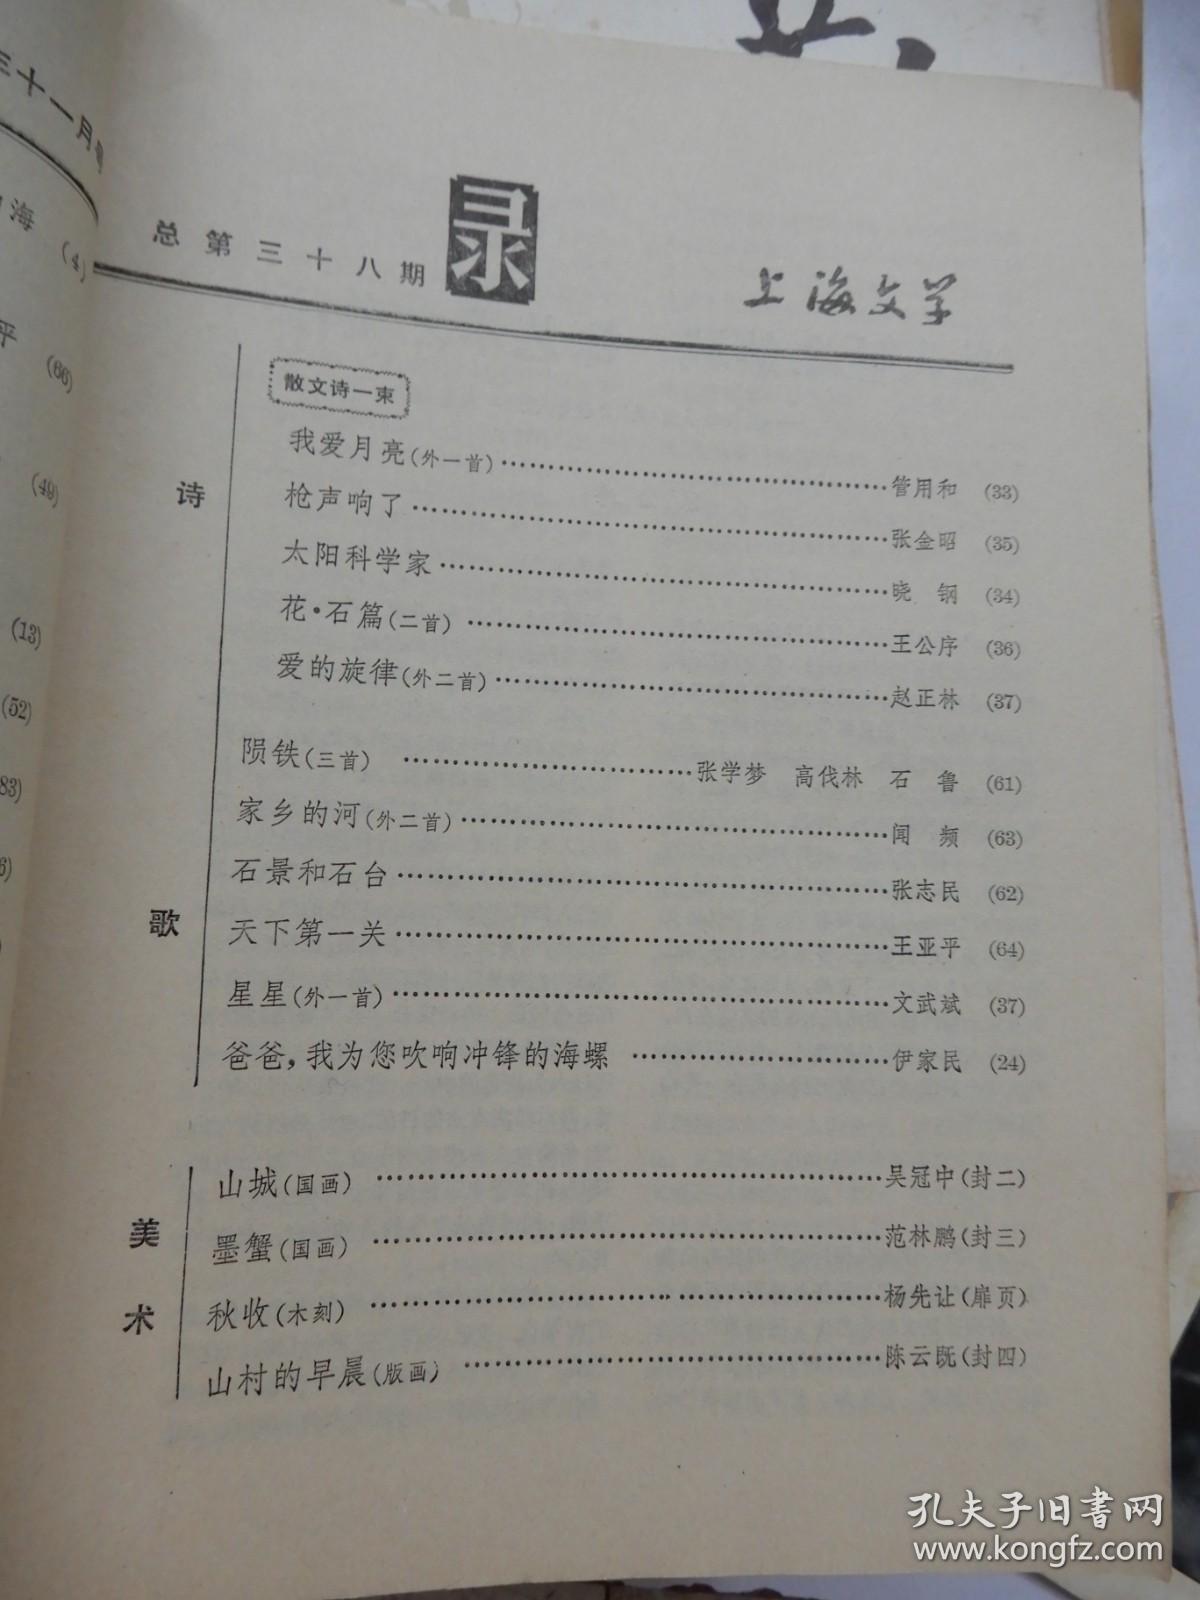 上海文学1980年11期